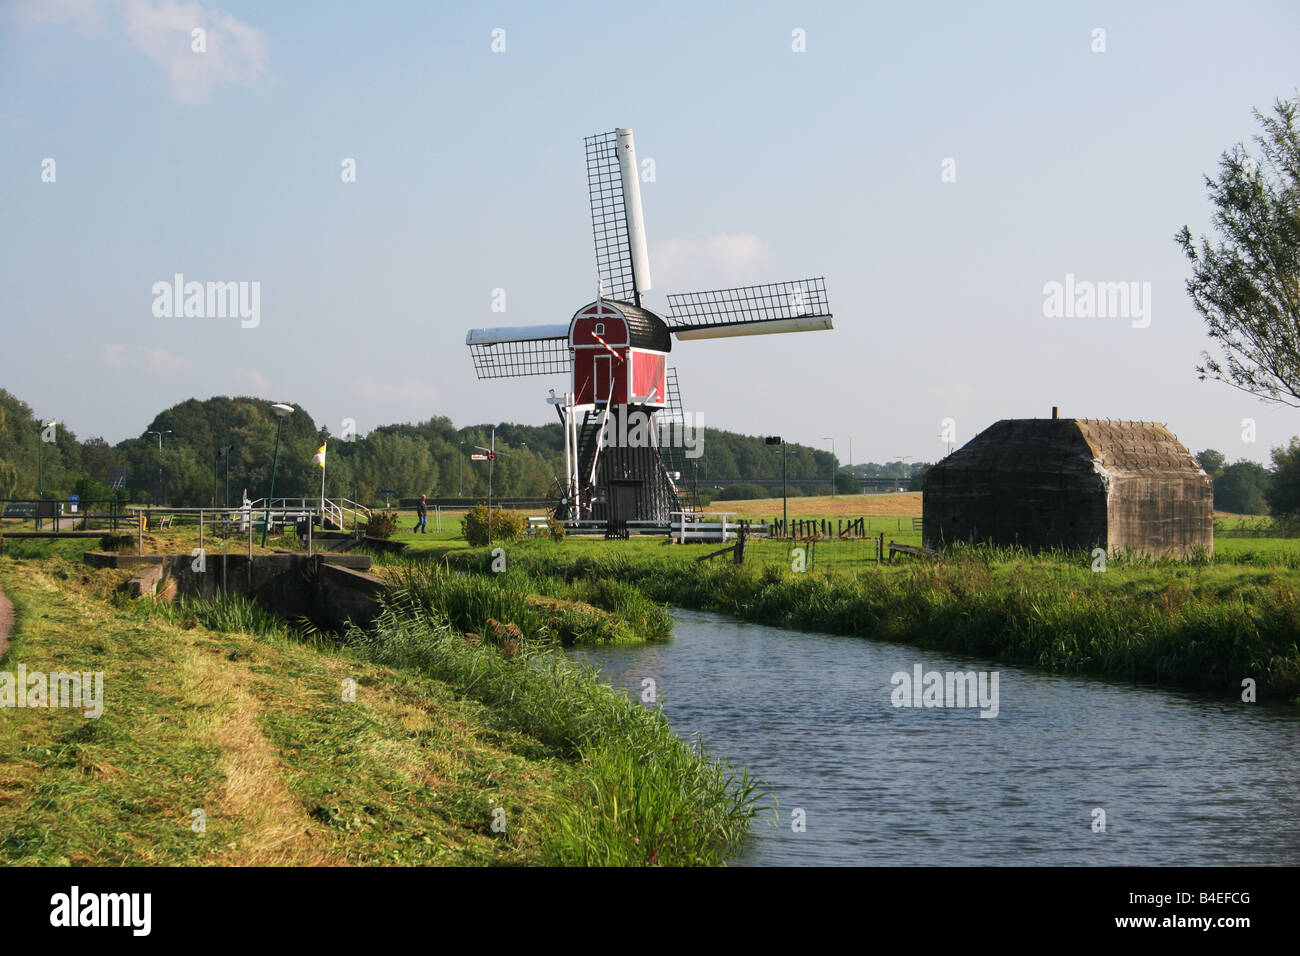 Windmills at Maarsen, Utrecht, Netherlands Stock Photo